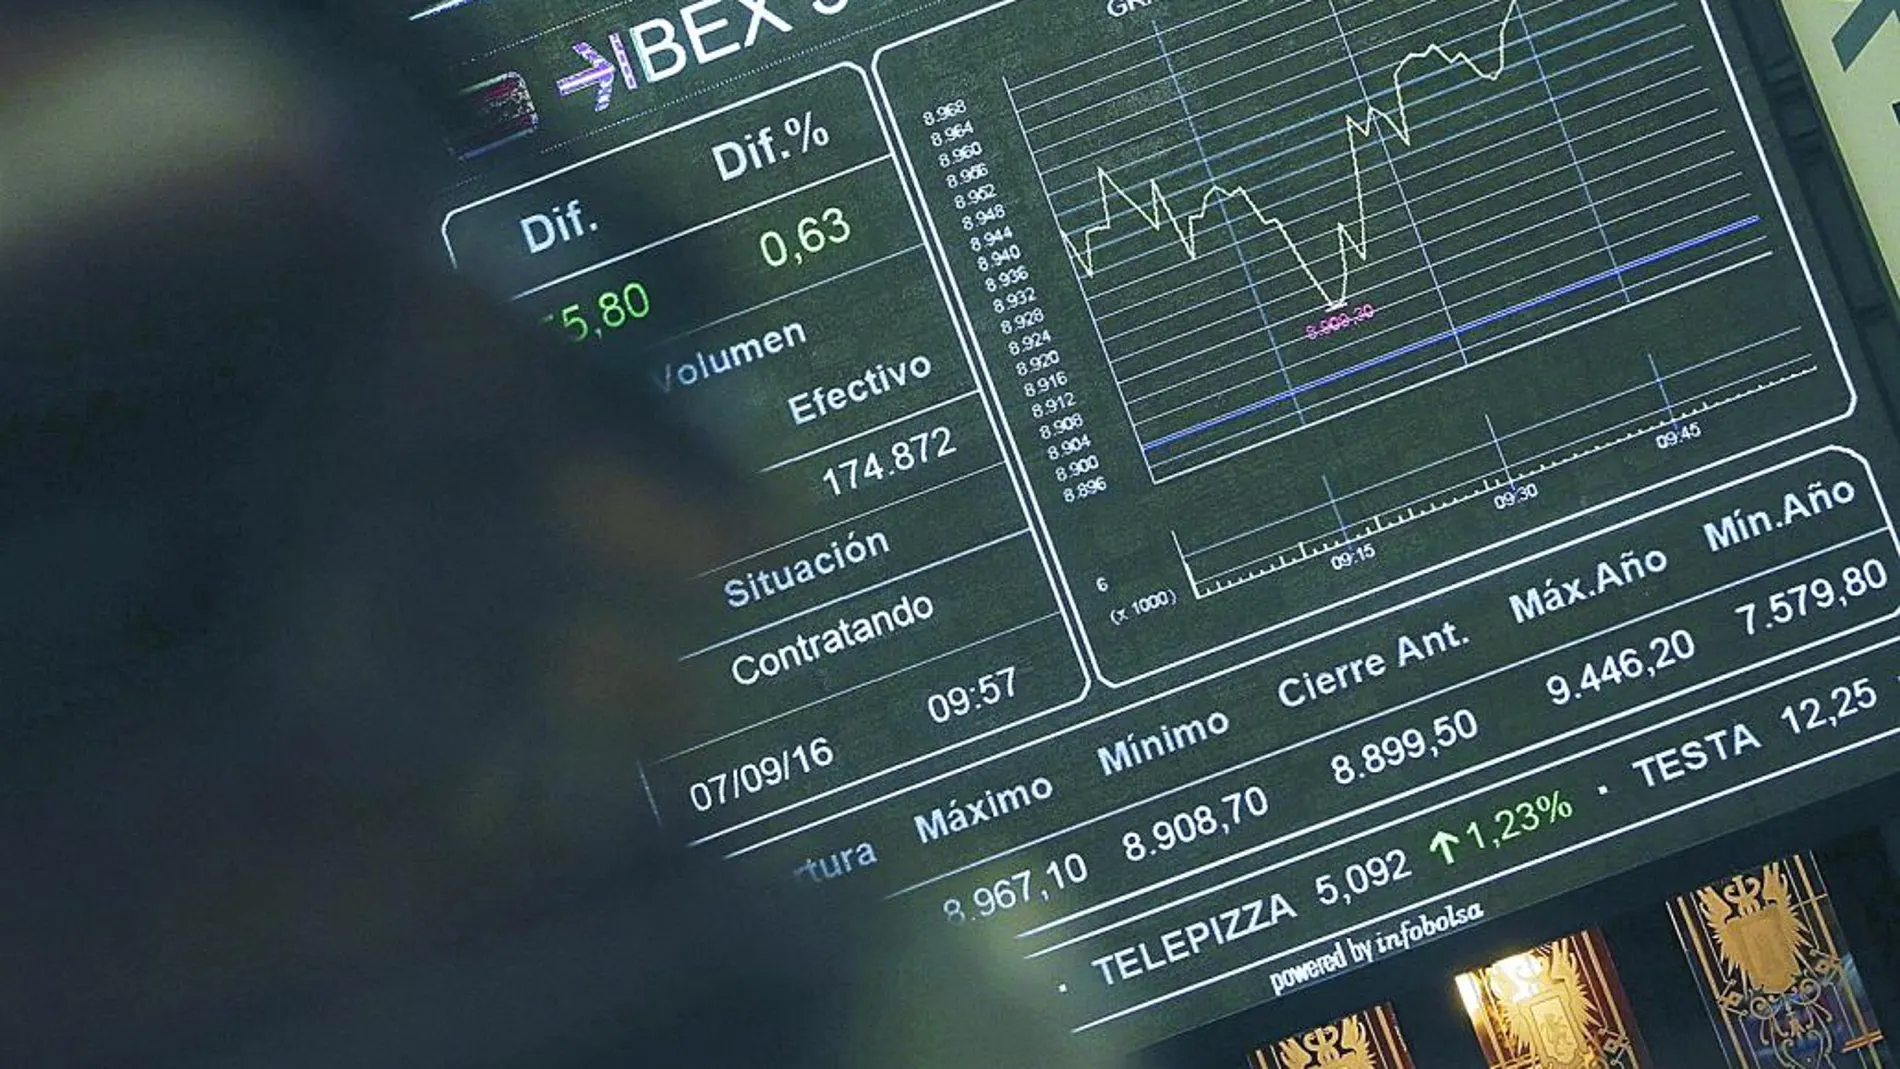 Ocho compañías del Ibex 35 logran ya más del 50% de su financiación a través de bonos